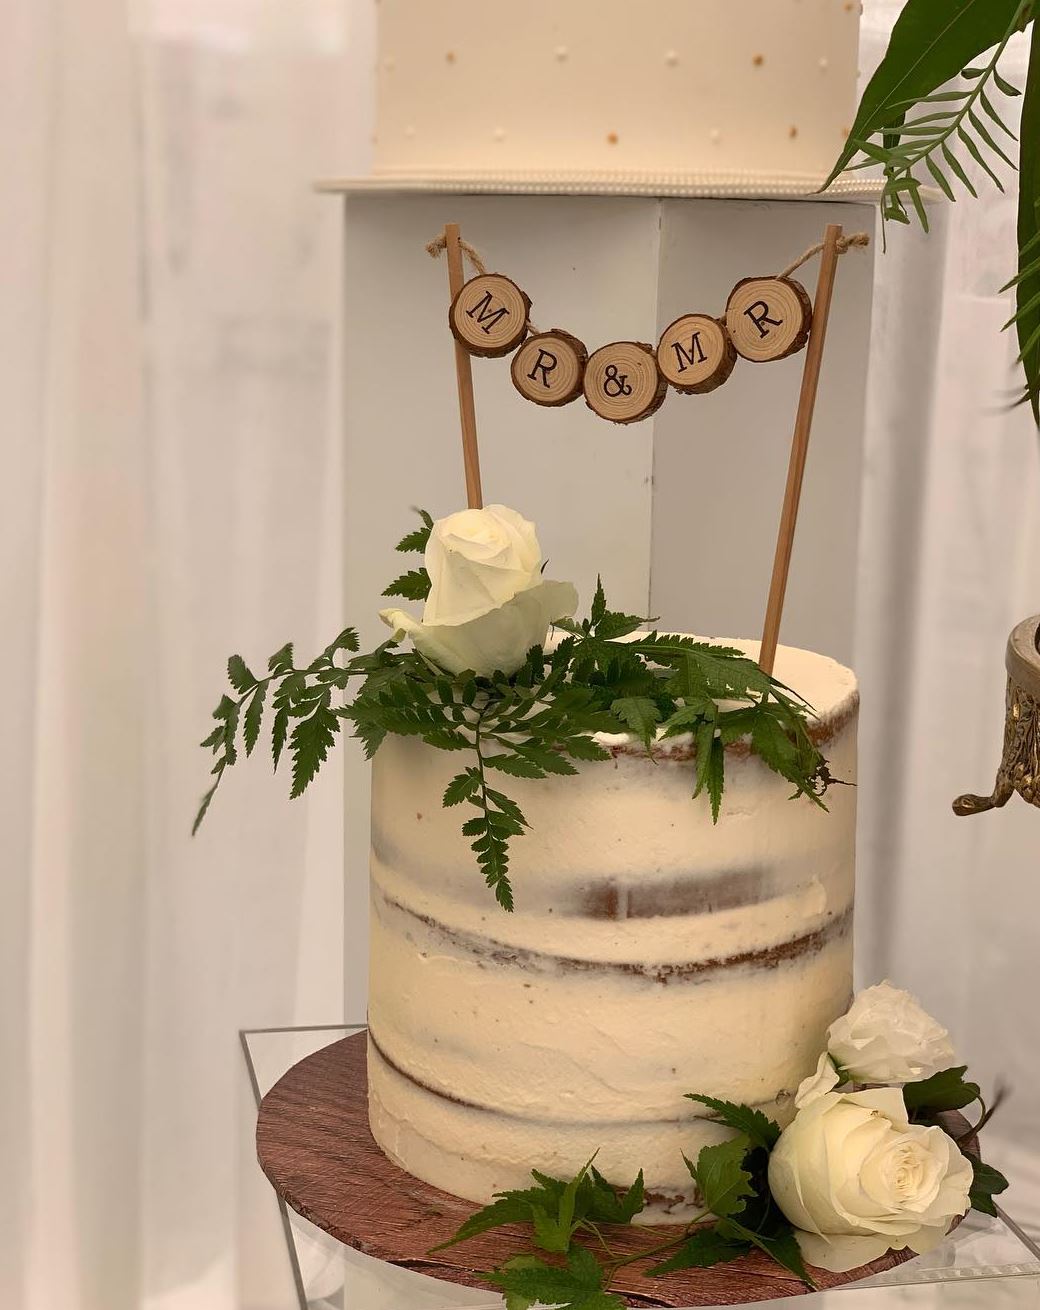 Homestyle Desserts - Wedding Cake - Peekskill, NY - WeddingWire